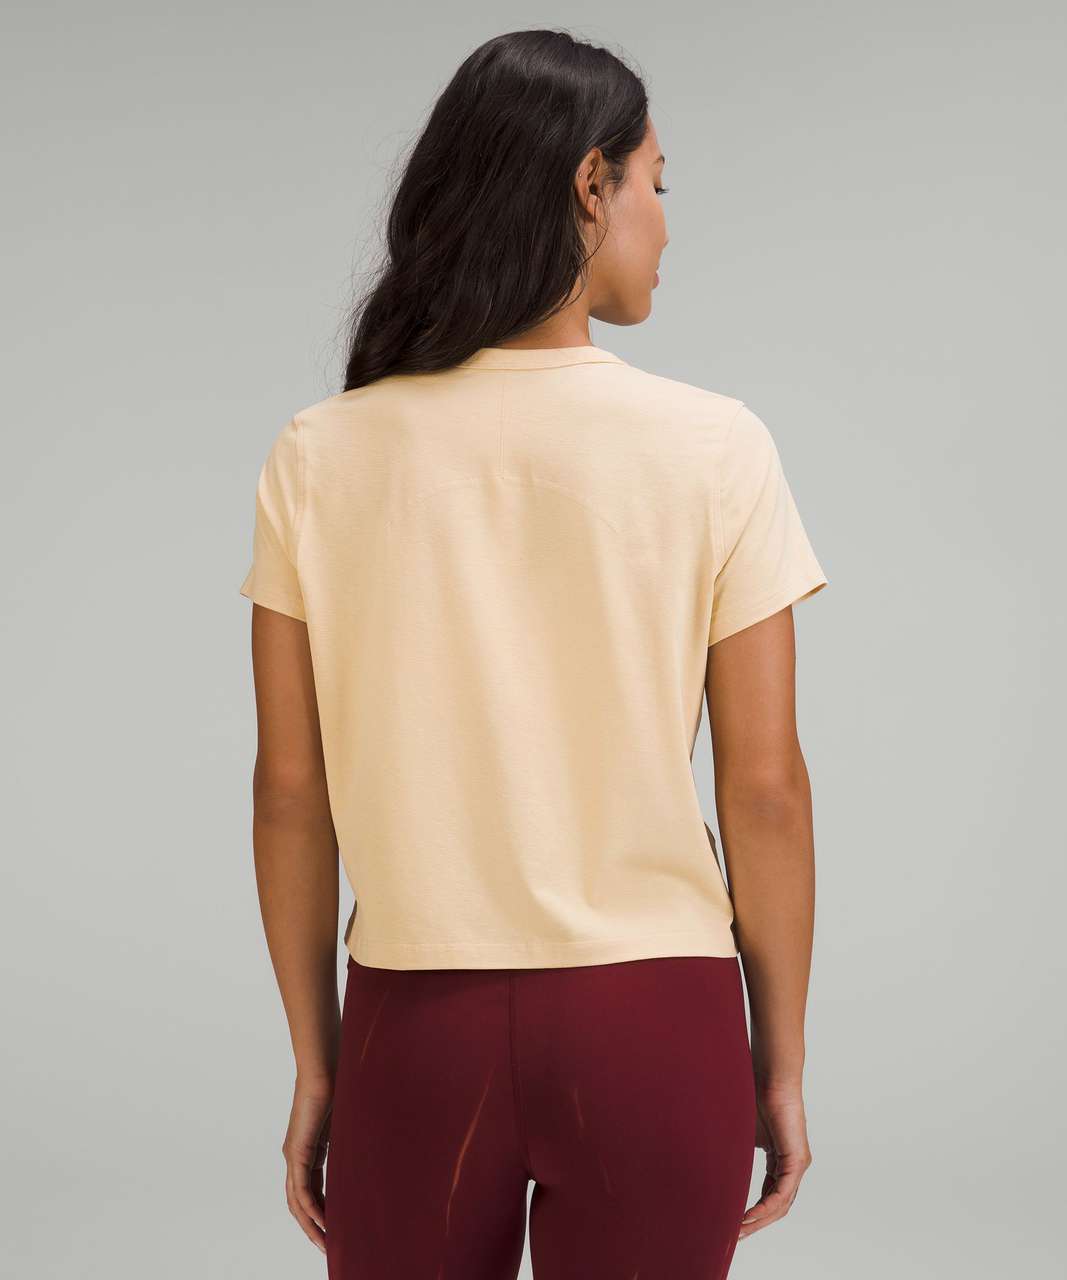 Lululemon Classic-Fit Cotton-Blend T-Shirt - Prosecco